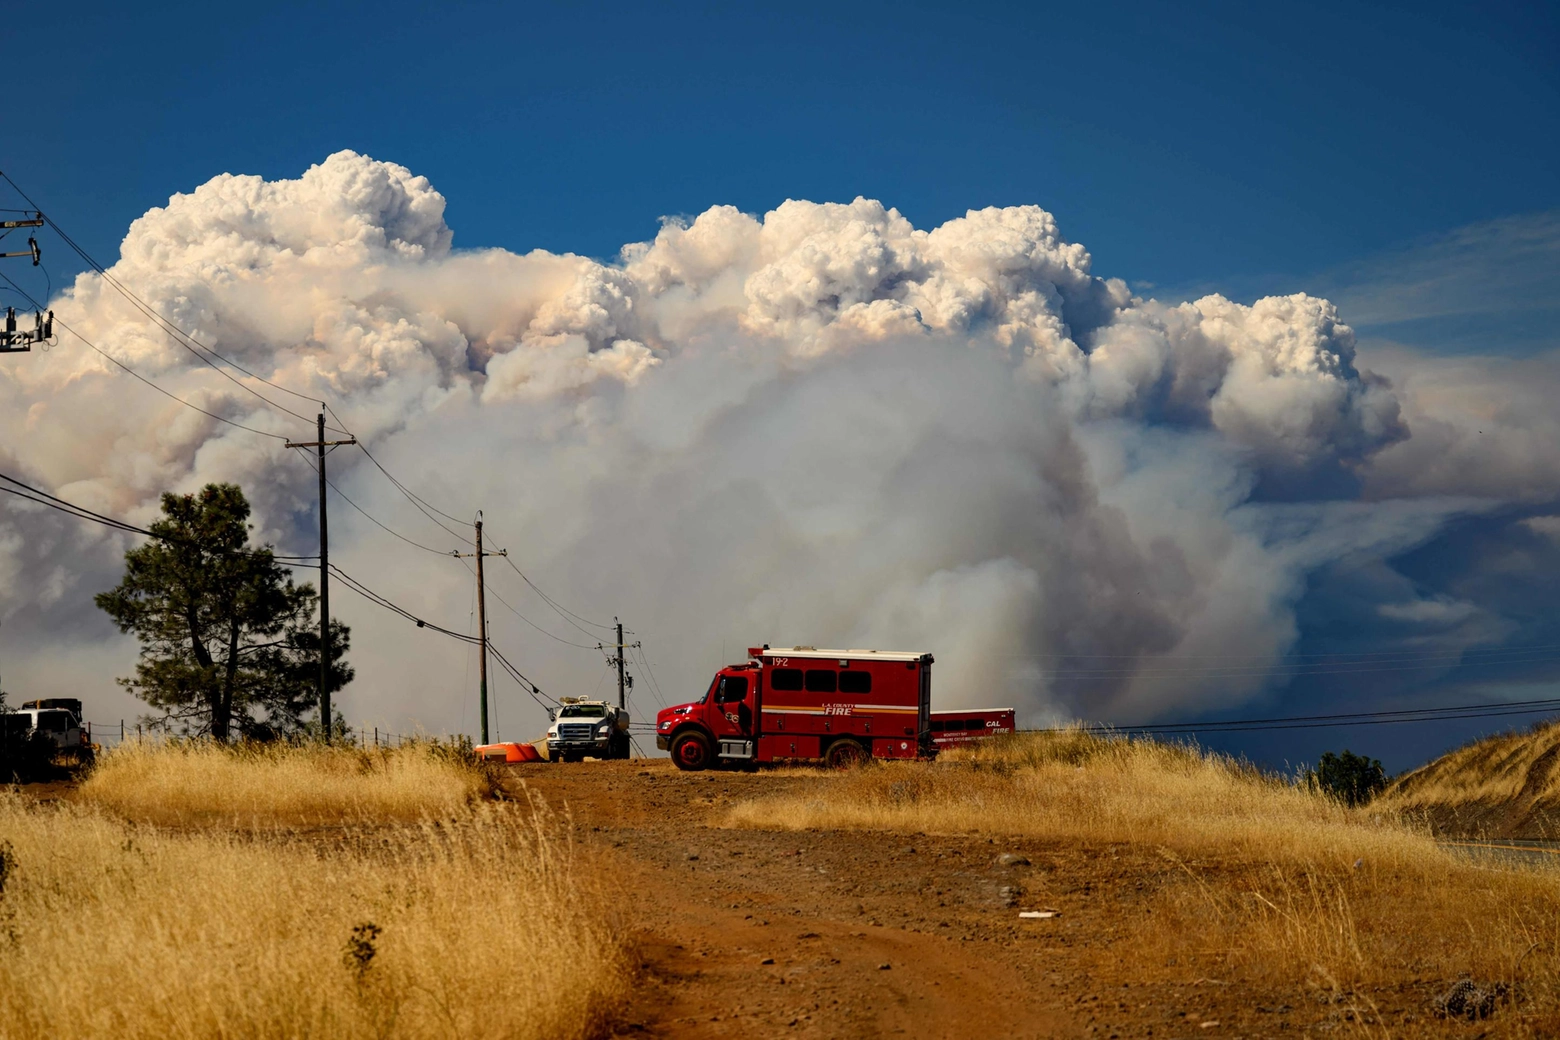 La nuvola di fumo visibile a km di distanza dall'incendio in California